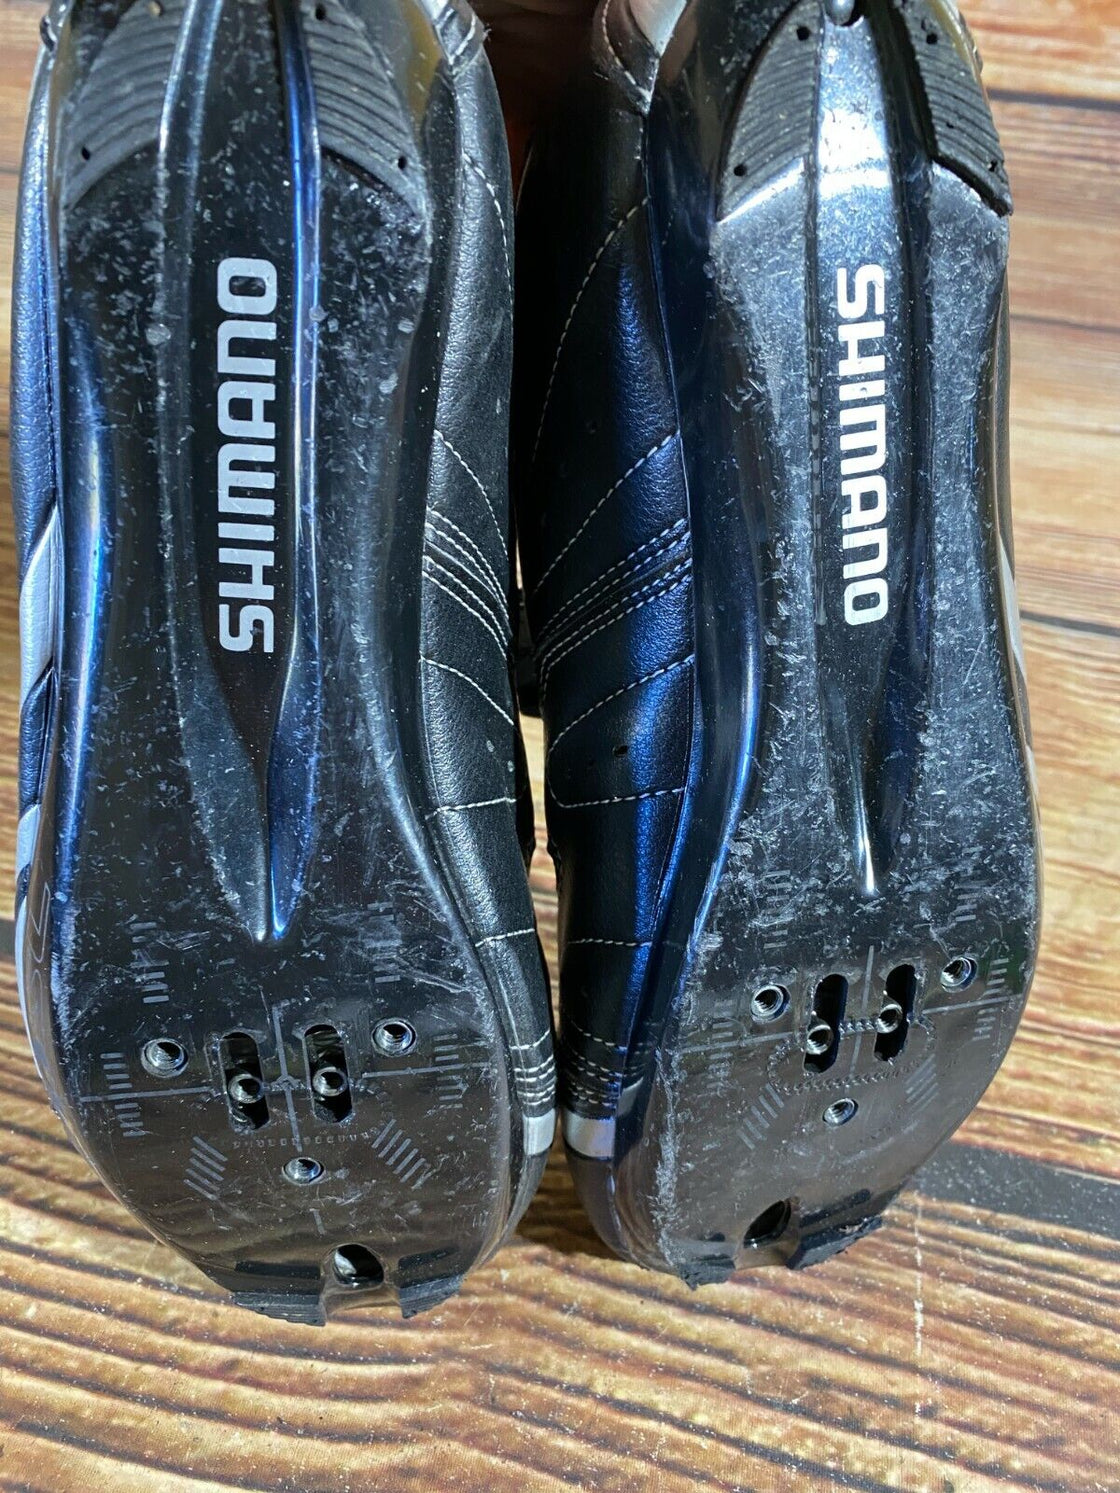 SHIMANO R076 Road Cycling Shoes Biking Boots 3 Bolts Size EU41, US7.6